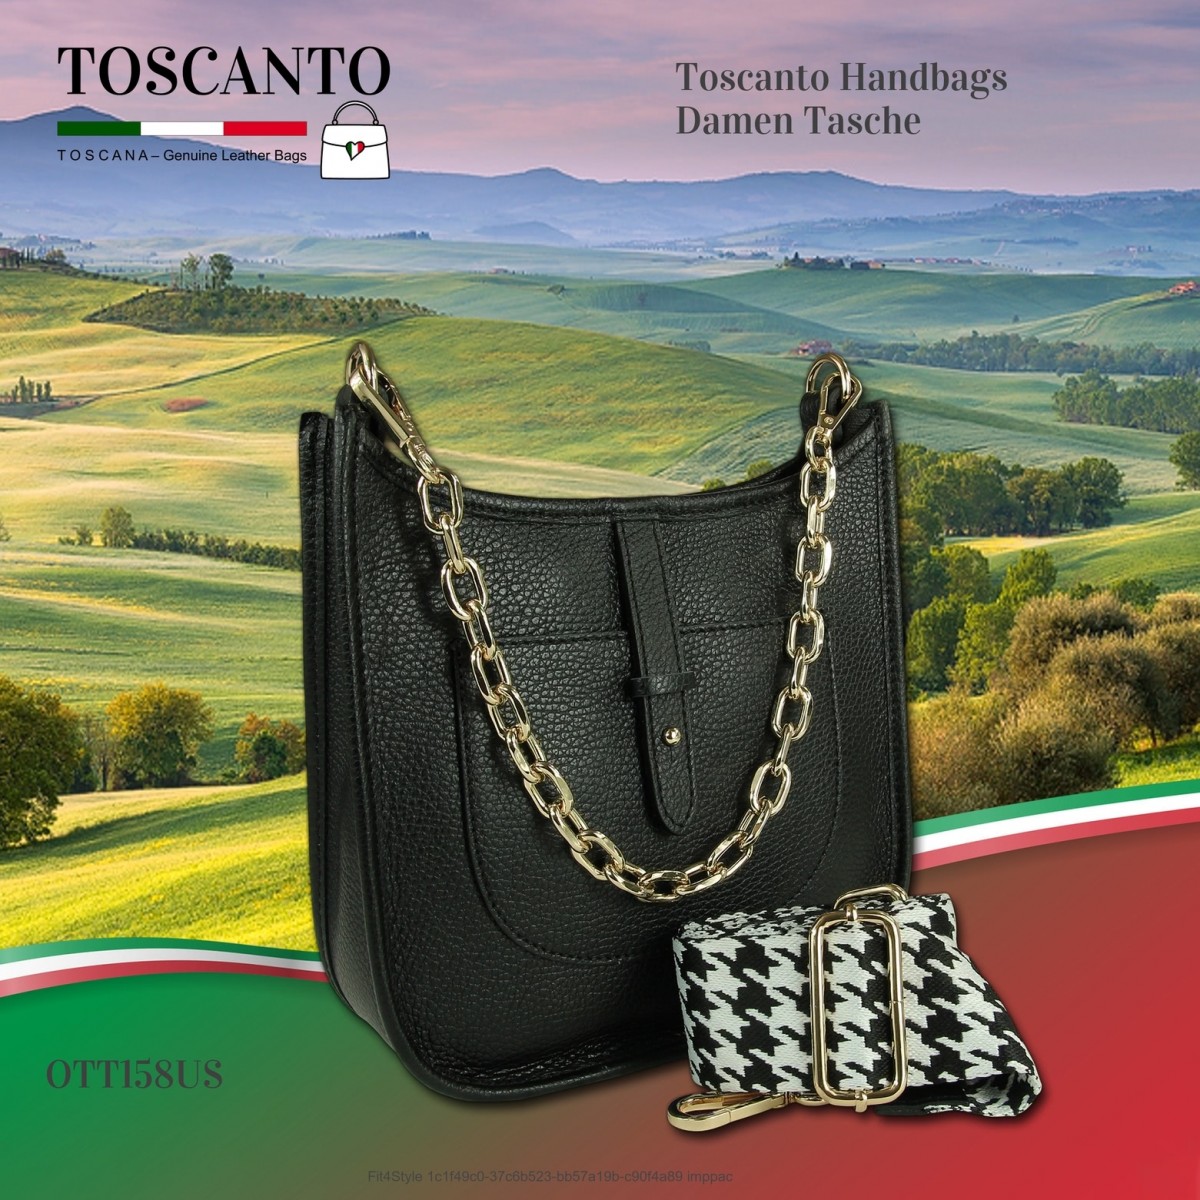 Toscanto Damen Citytasche OTT158US Jugend schwarz Umhängetasche Leder Tasche